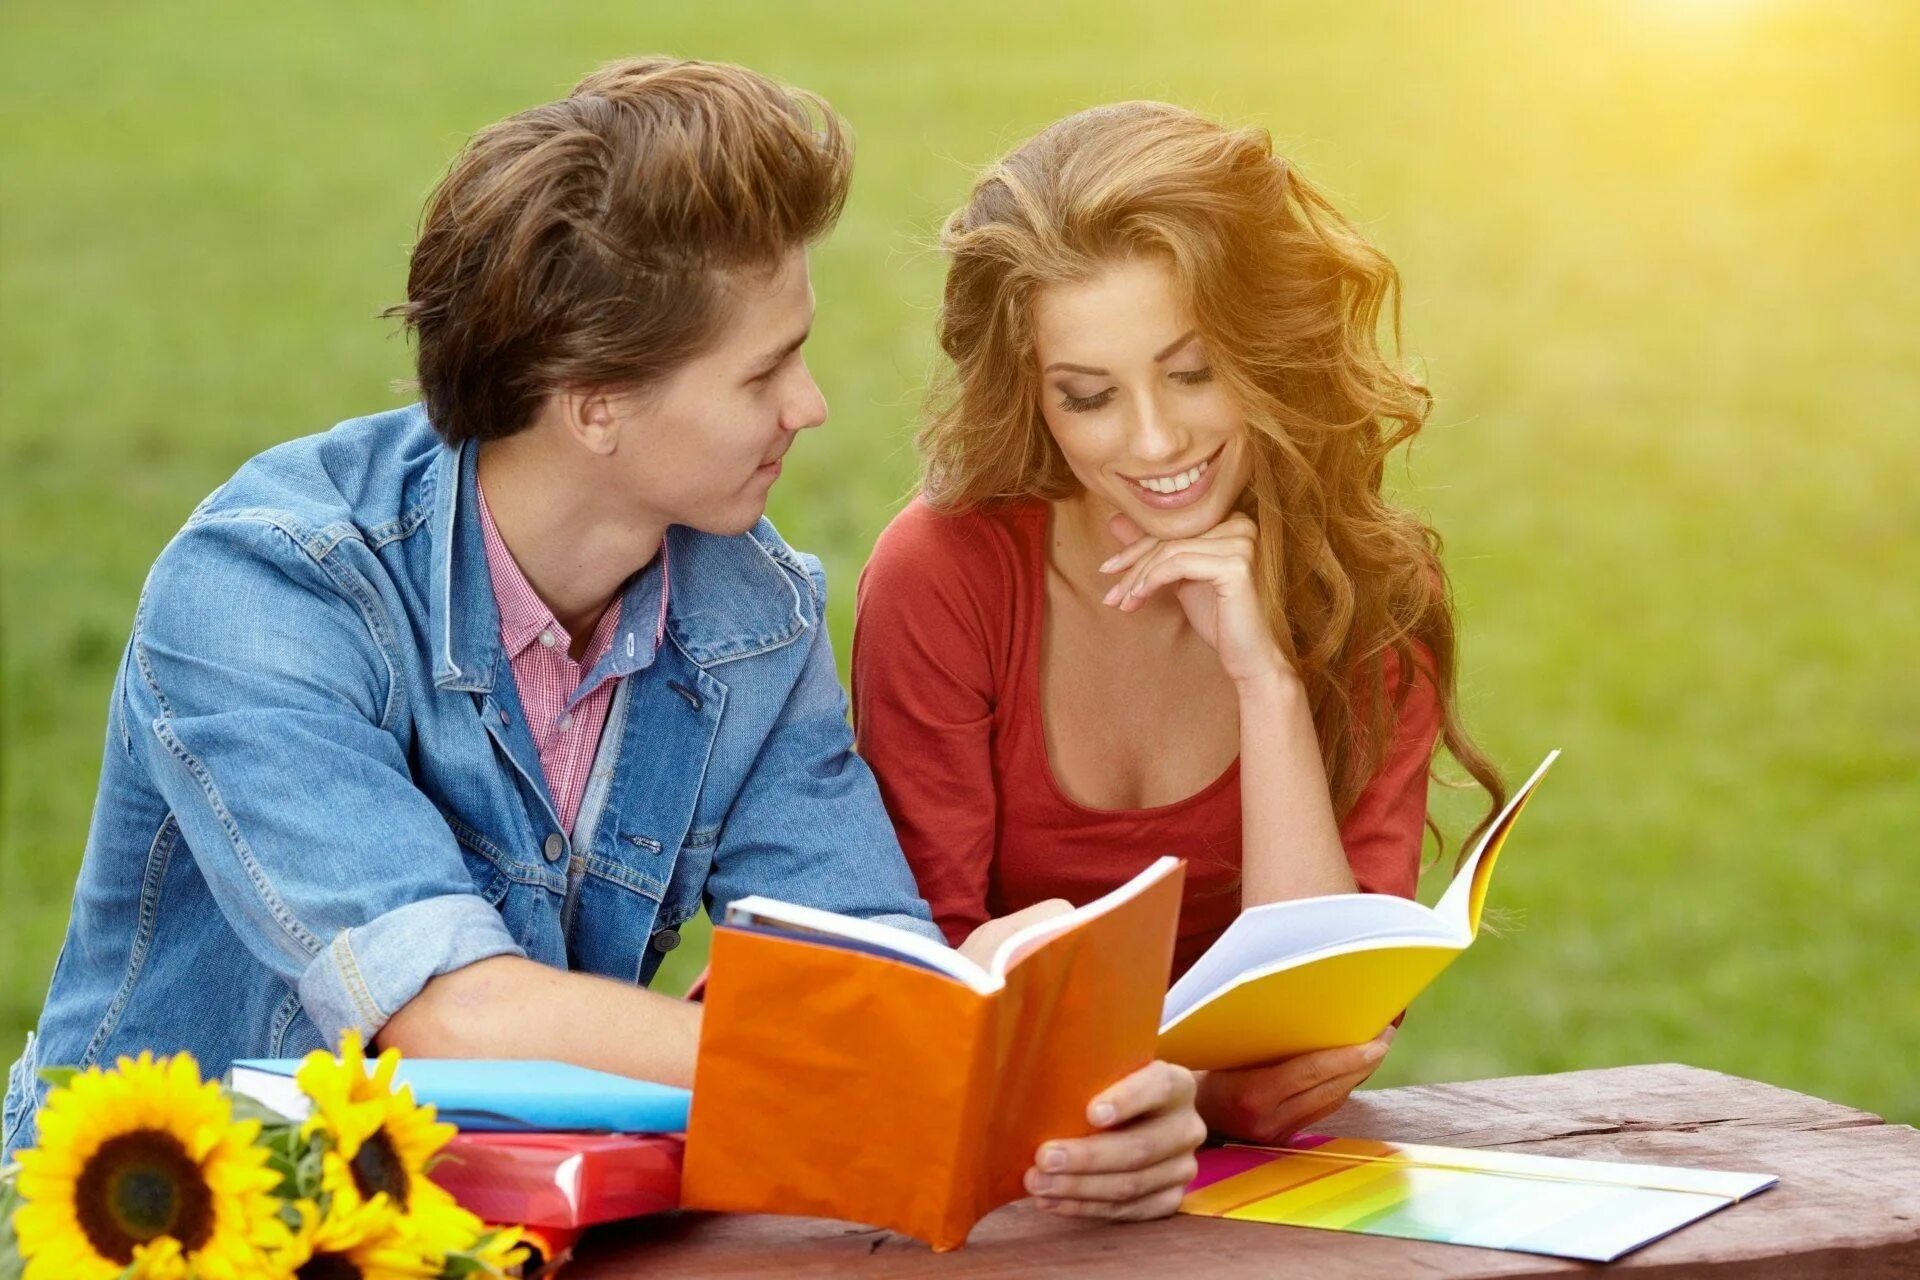 Общение людей. Чтение книг. Молодежь и чтение. Радость общения.